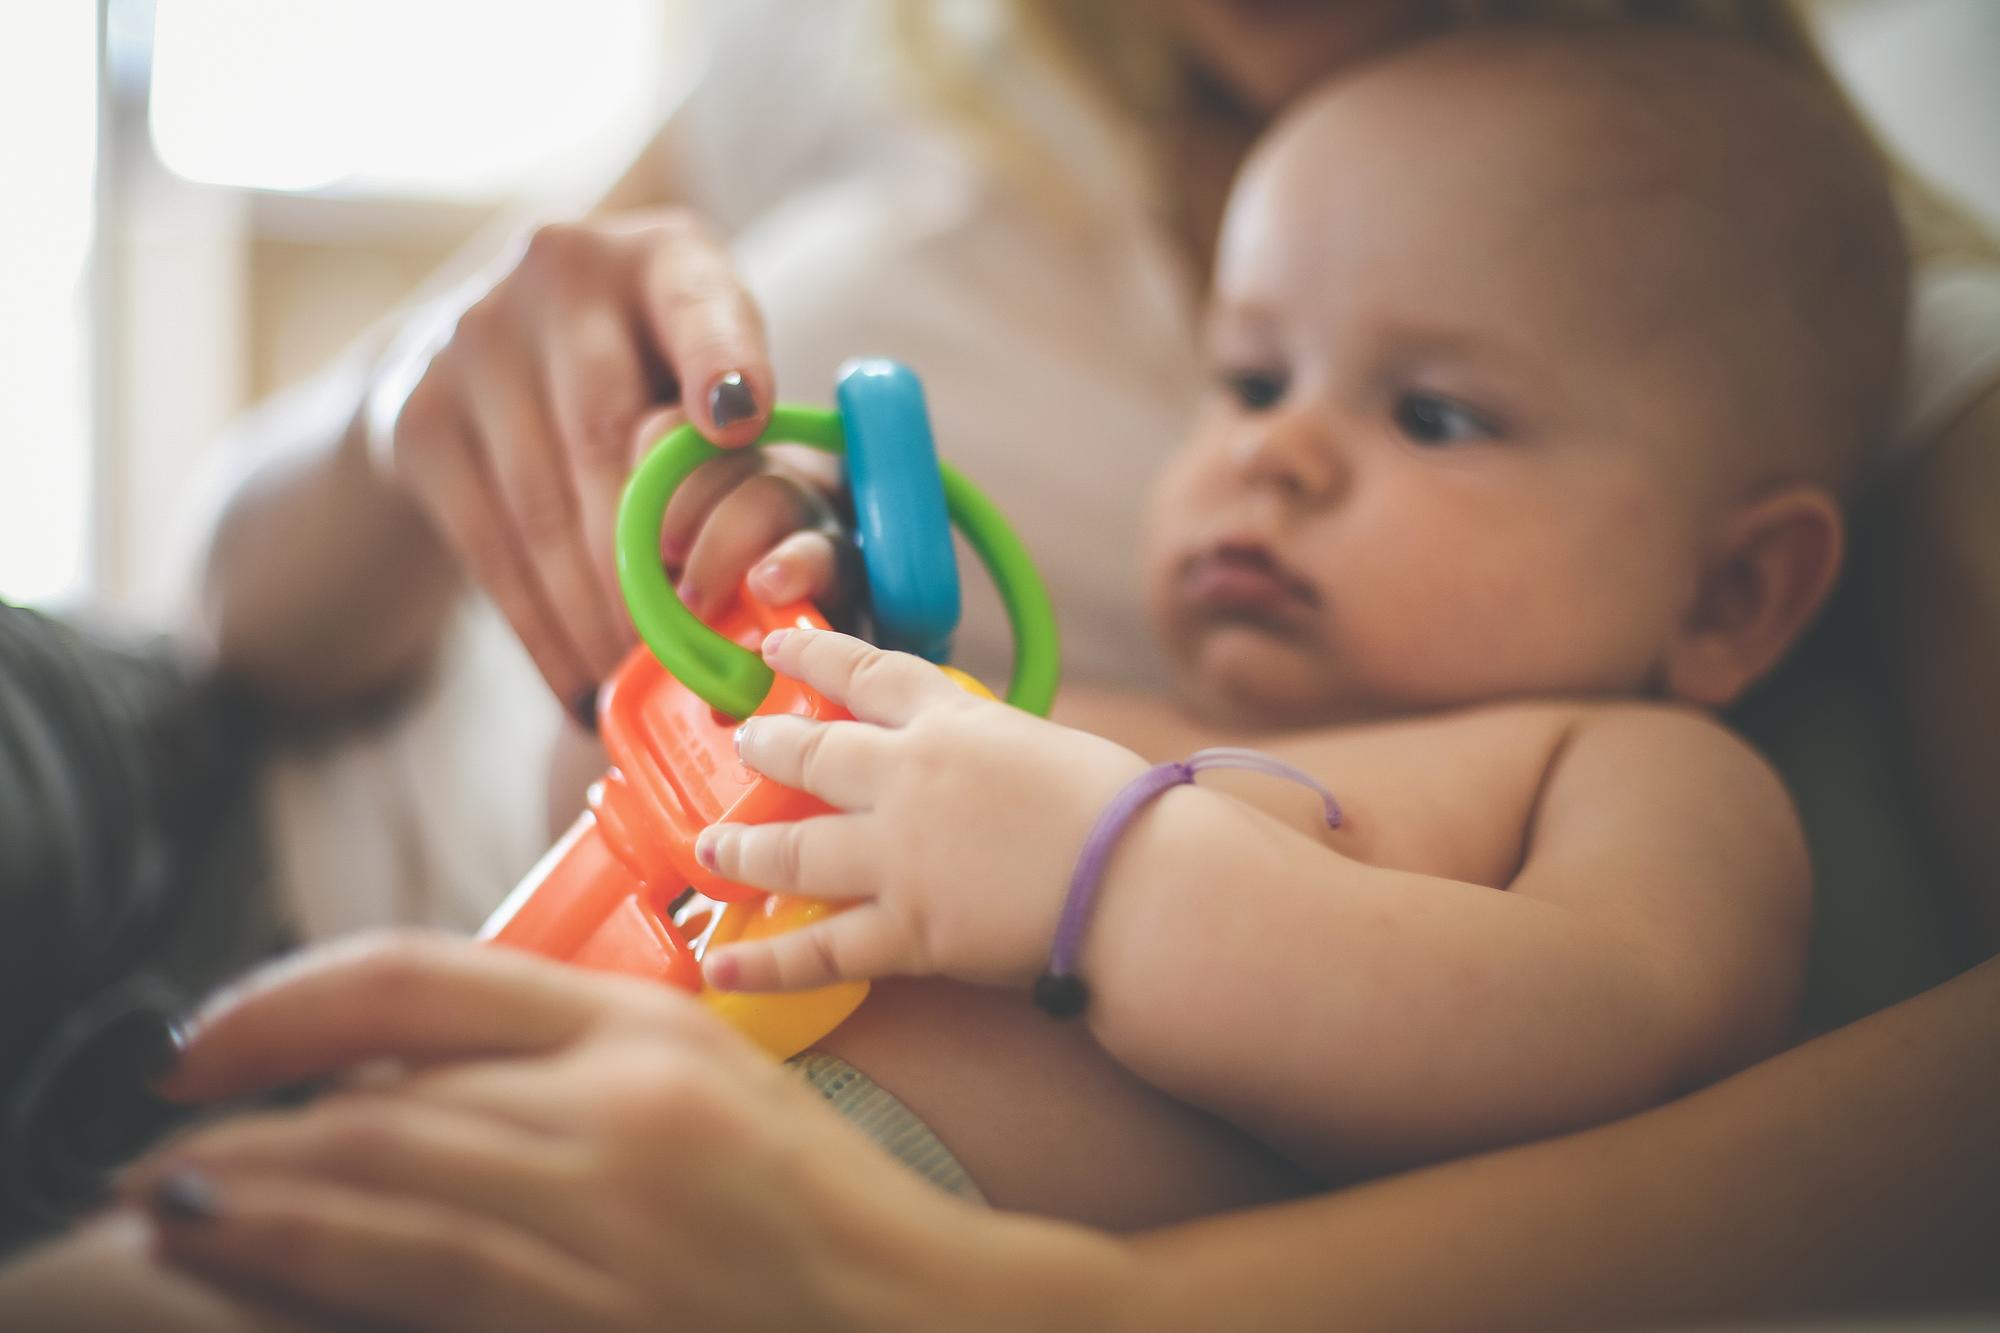 Hračky pre rozvoj dieťaťa: Aké sú vhodné, a ktoré radšej nepoužívať,  vysvetľuje fyzioterapeutka - Rady fyzioterapeutky | Najmama.sk